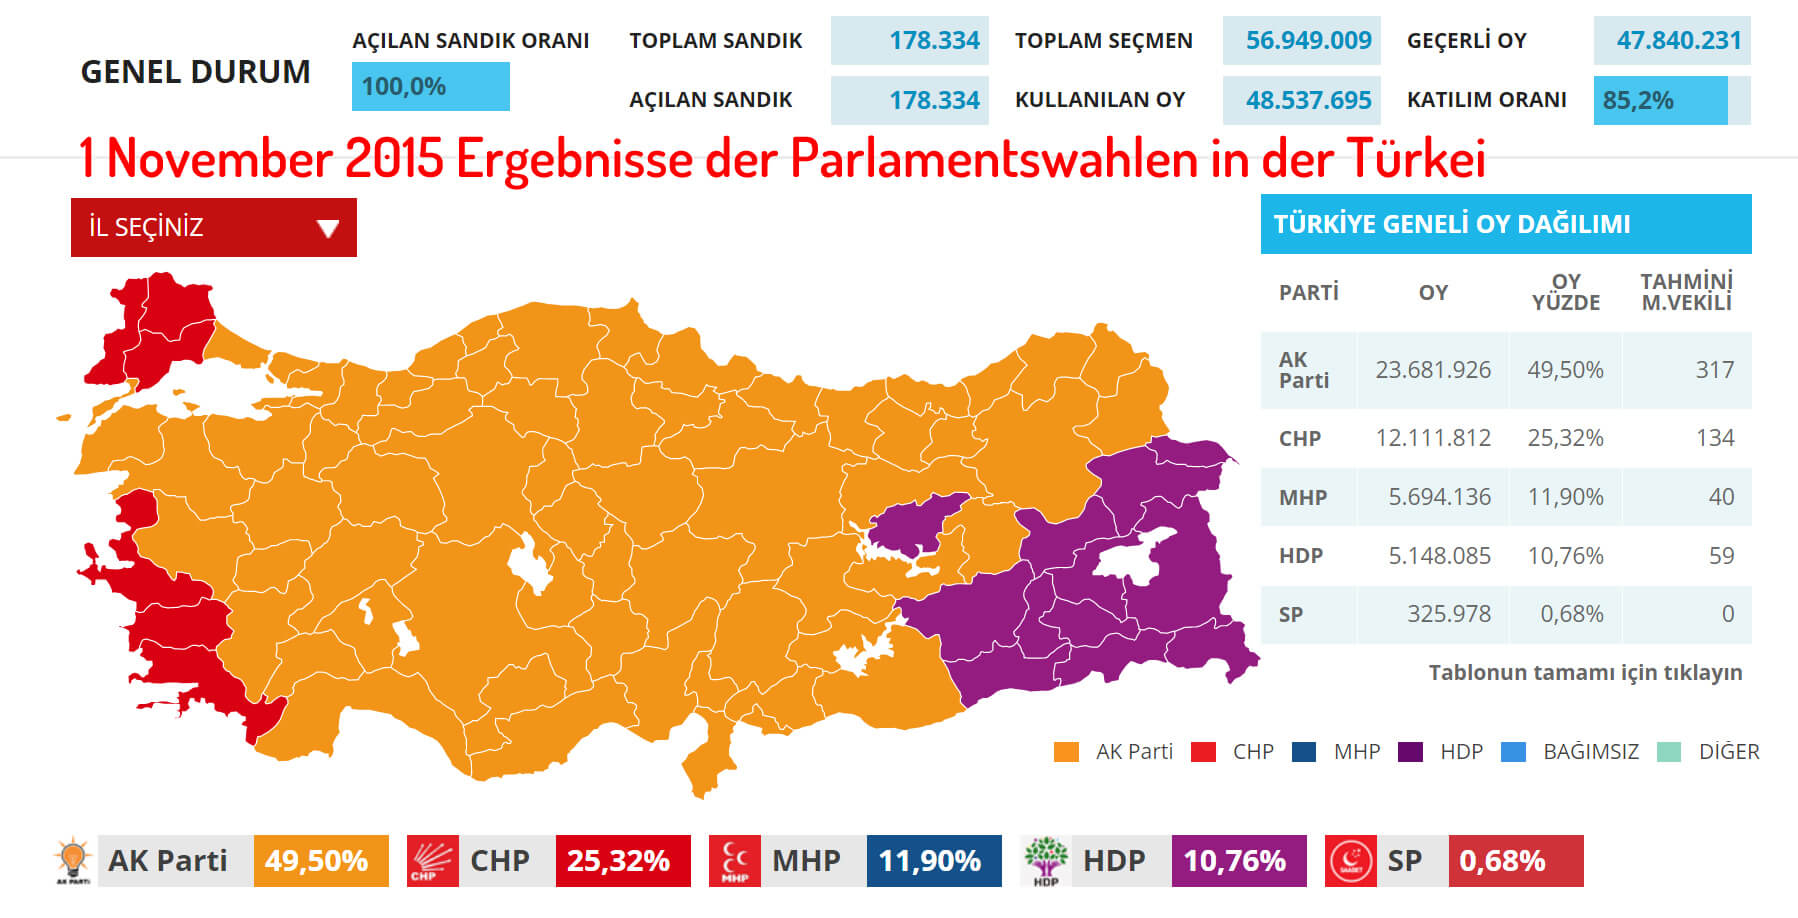 1 November 2015 Ergebnisse der Parlamentswahlen in der Türkei